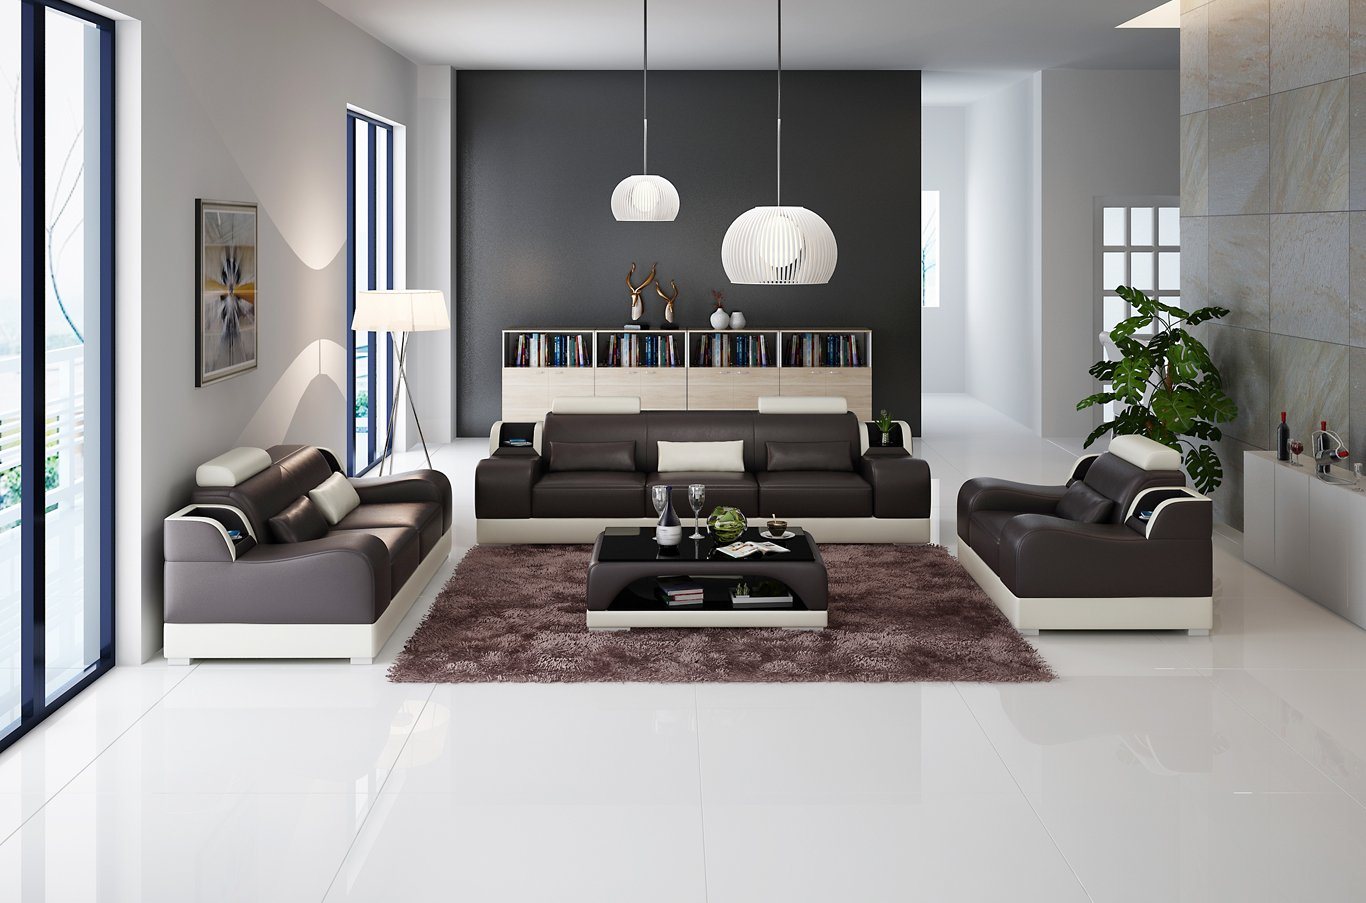 JVmoebel Sofa Design Sofas 2x 3 Sitzer Set Sofas Polster Couchen Moderne von JVmoebel